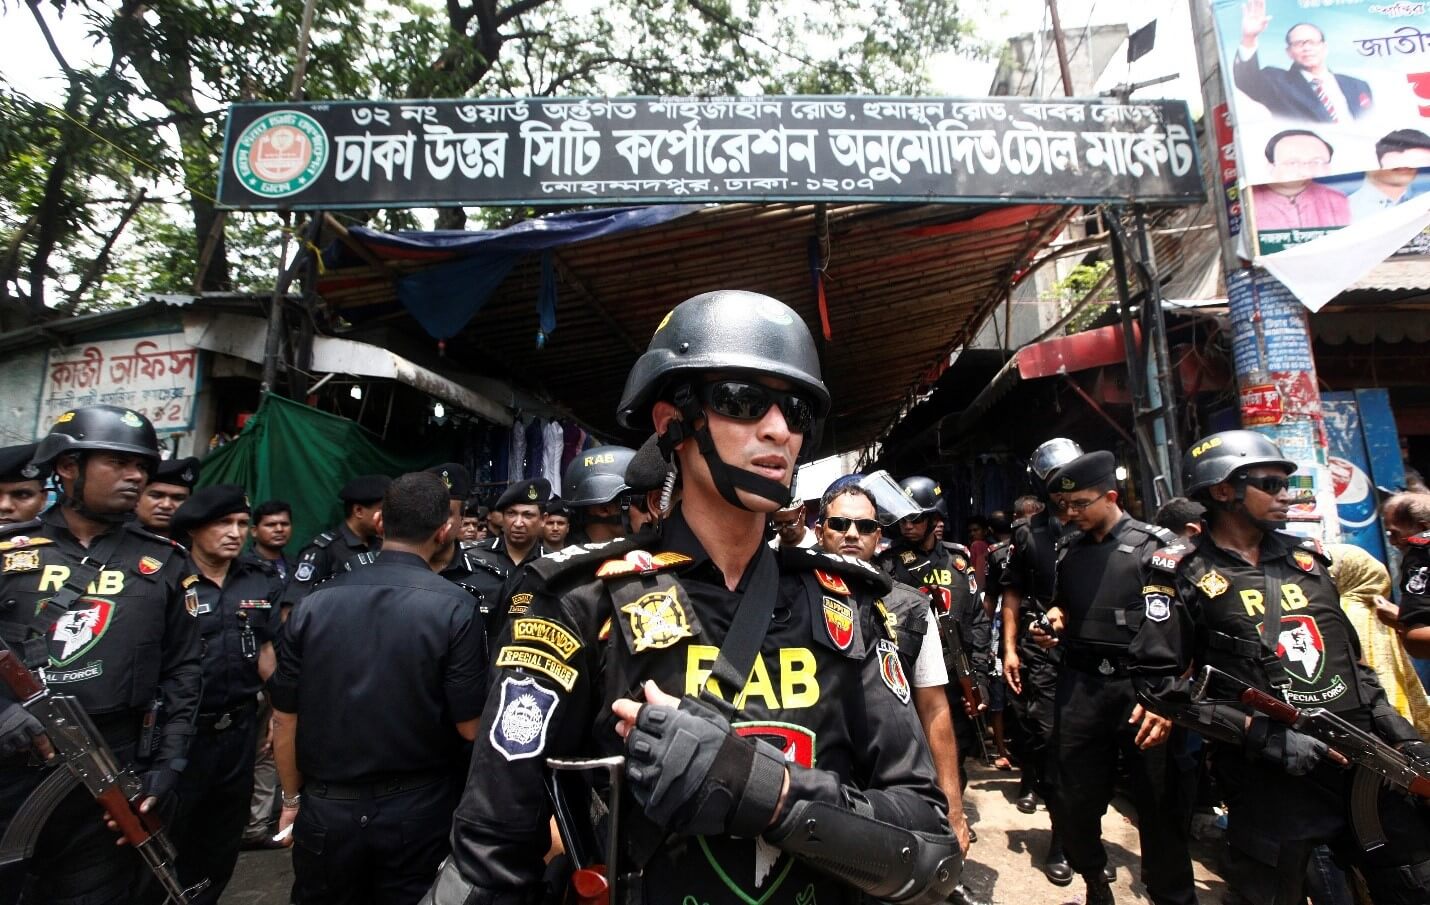 UK Refused to Sanction Bangladeshi “Death Squad” Despite Evidence of War Crimes